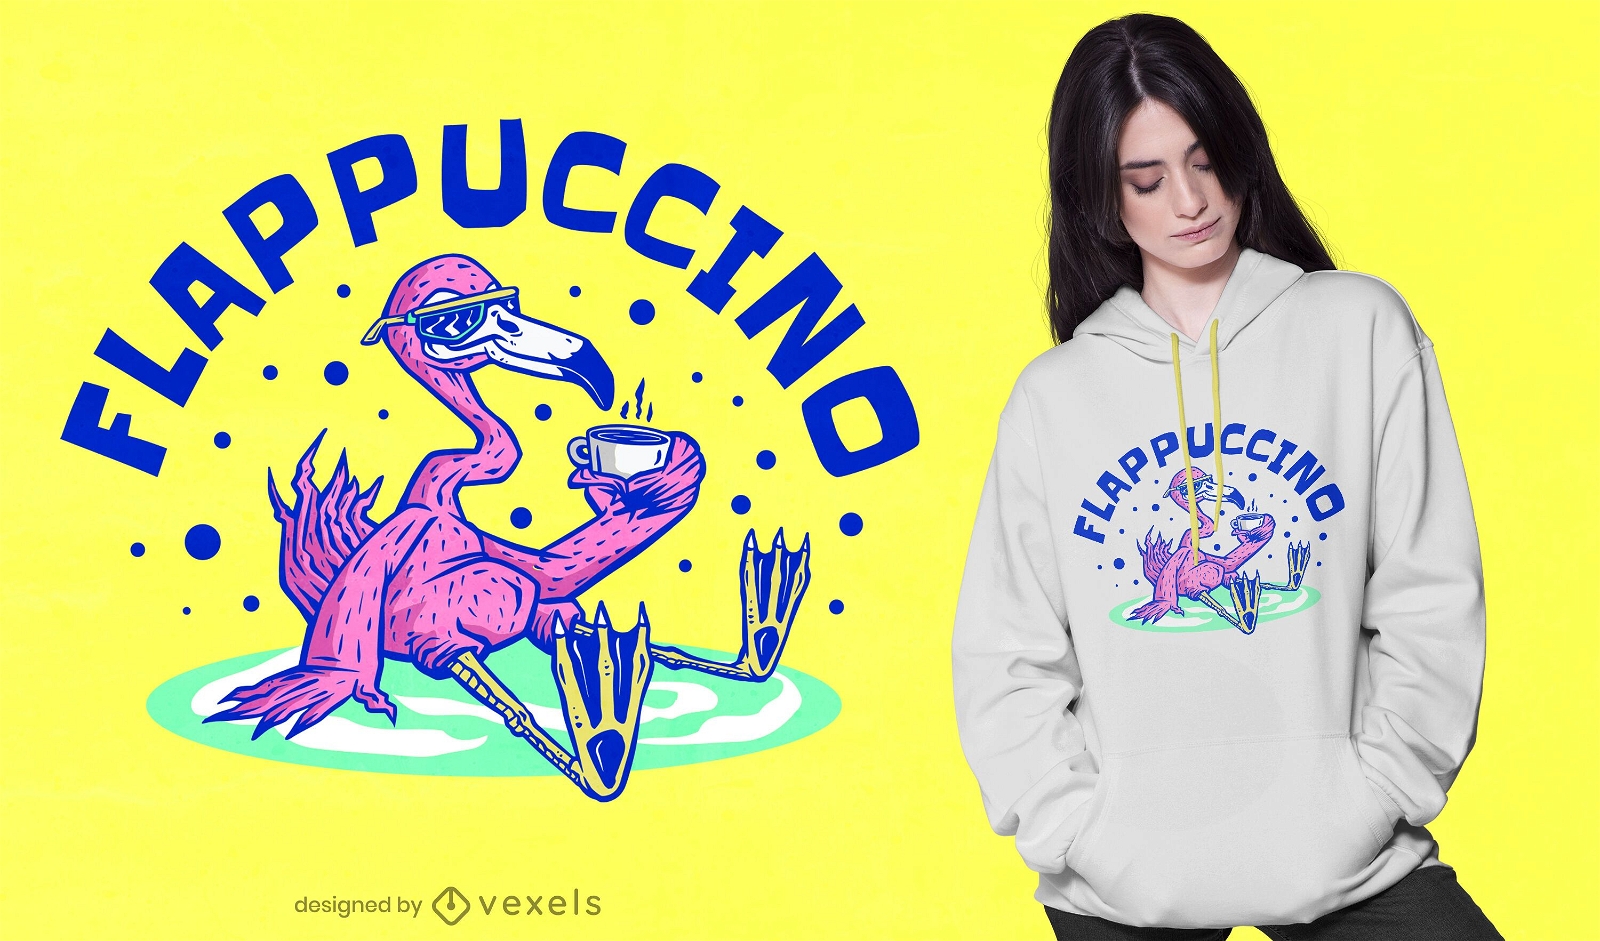 Flappuccino t-shirt design